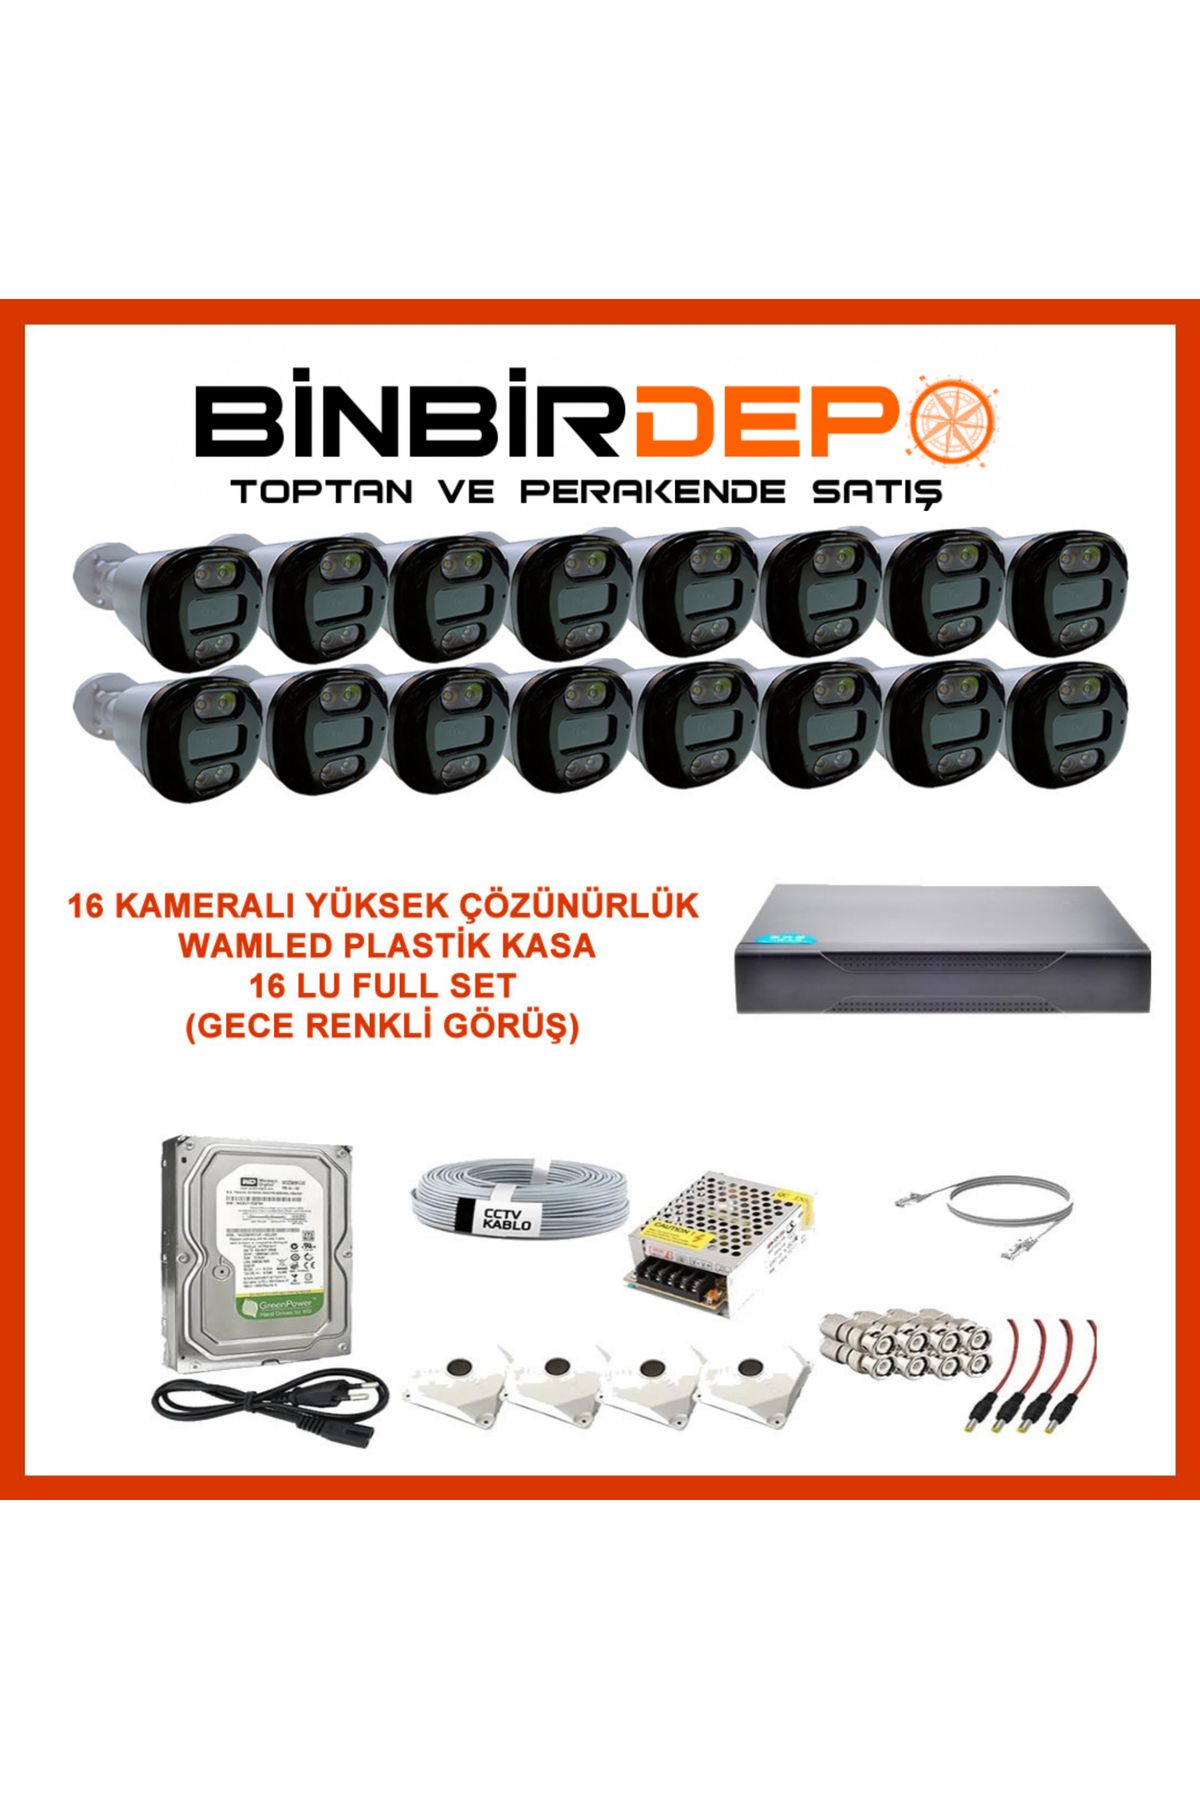 BinbirDepoNet 5MP 16 Kameralı Gece Renkli Görüş Dış Mekan Güvenlik Kamera Sistemi -Yapay Zeka Destekli